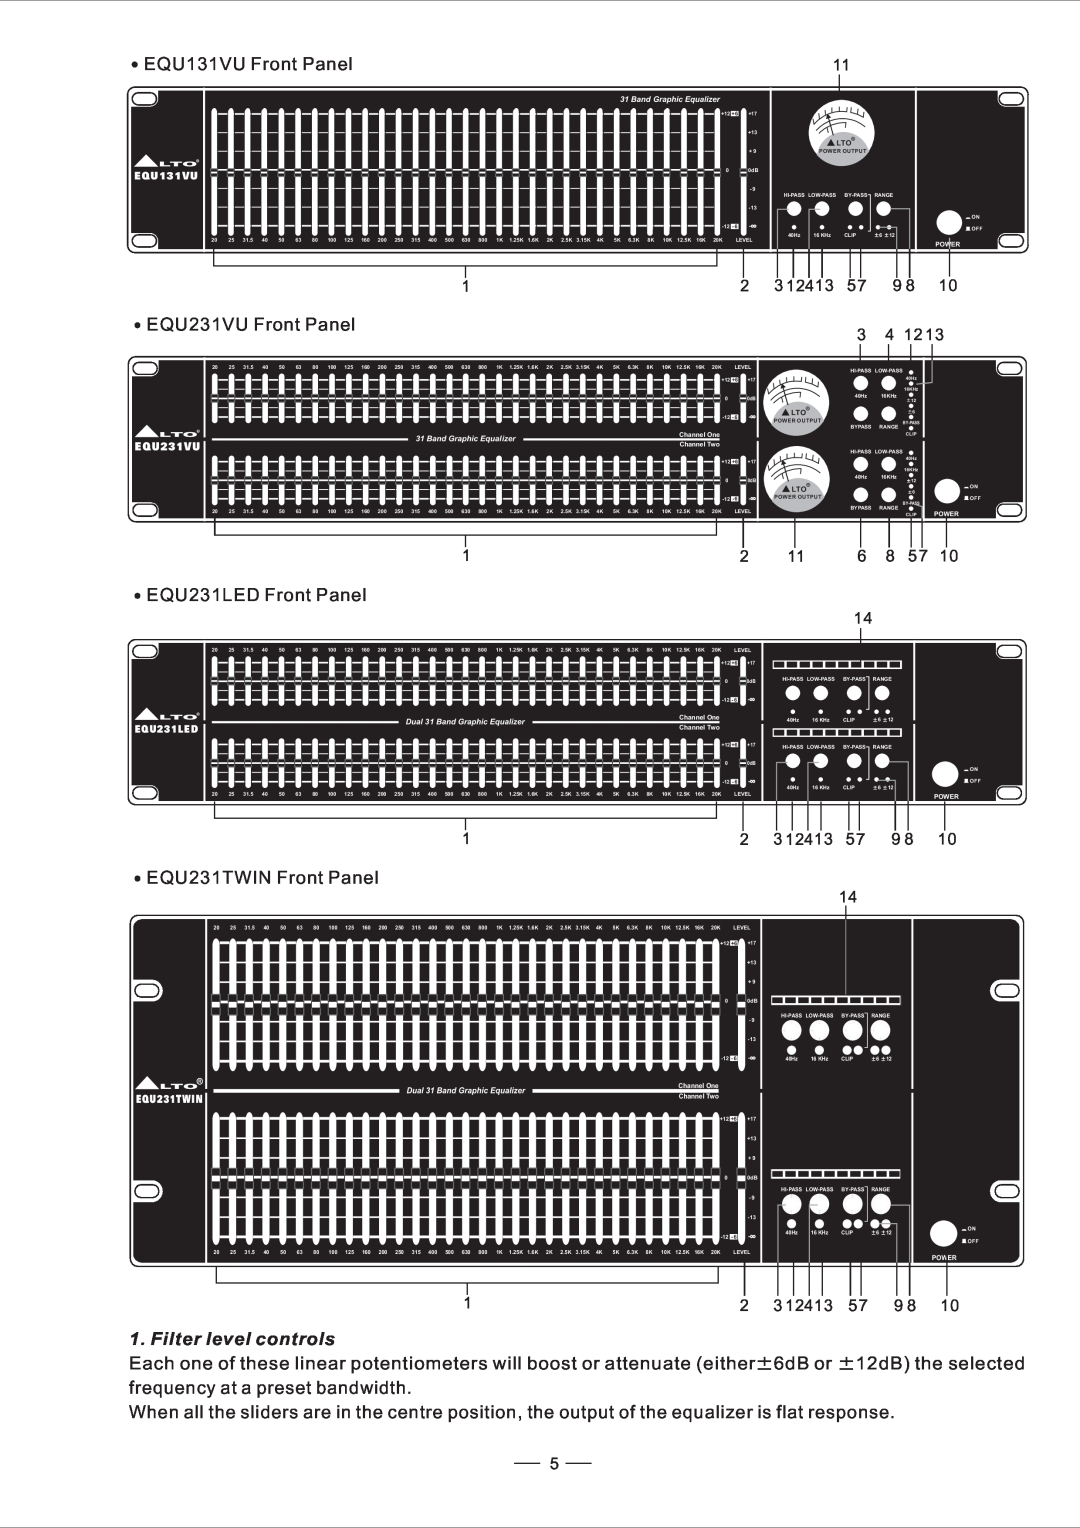 Nilfisk-ALTO user manual EQU231VU Front Panel, EQU231LED Front Panel, Filter level controls 